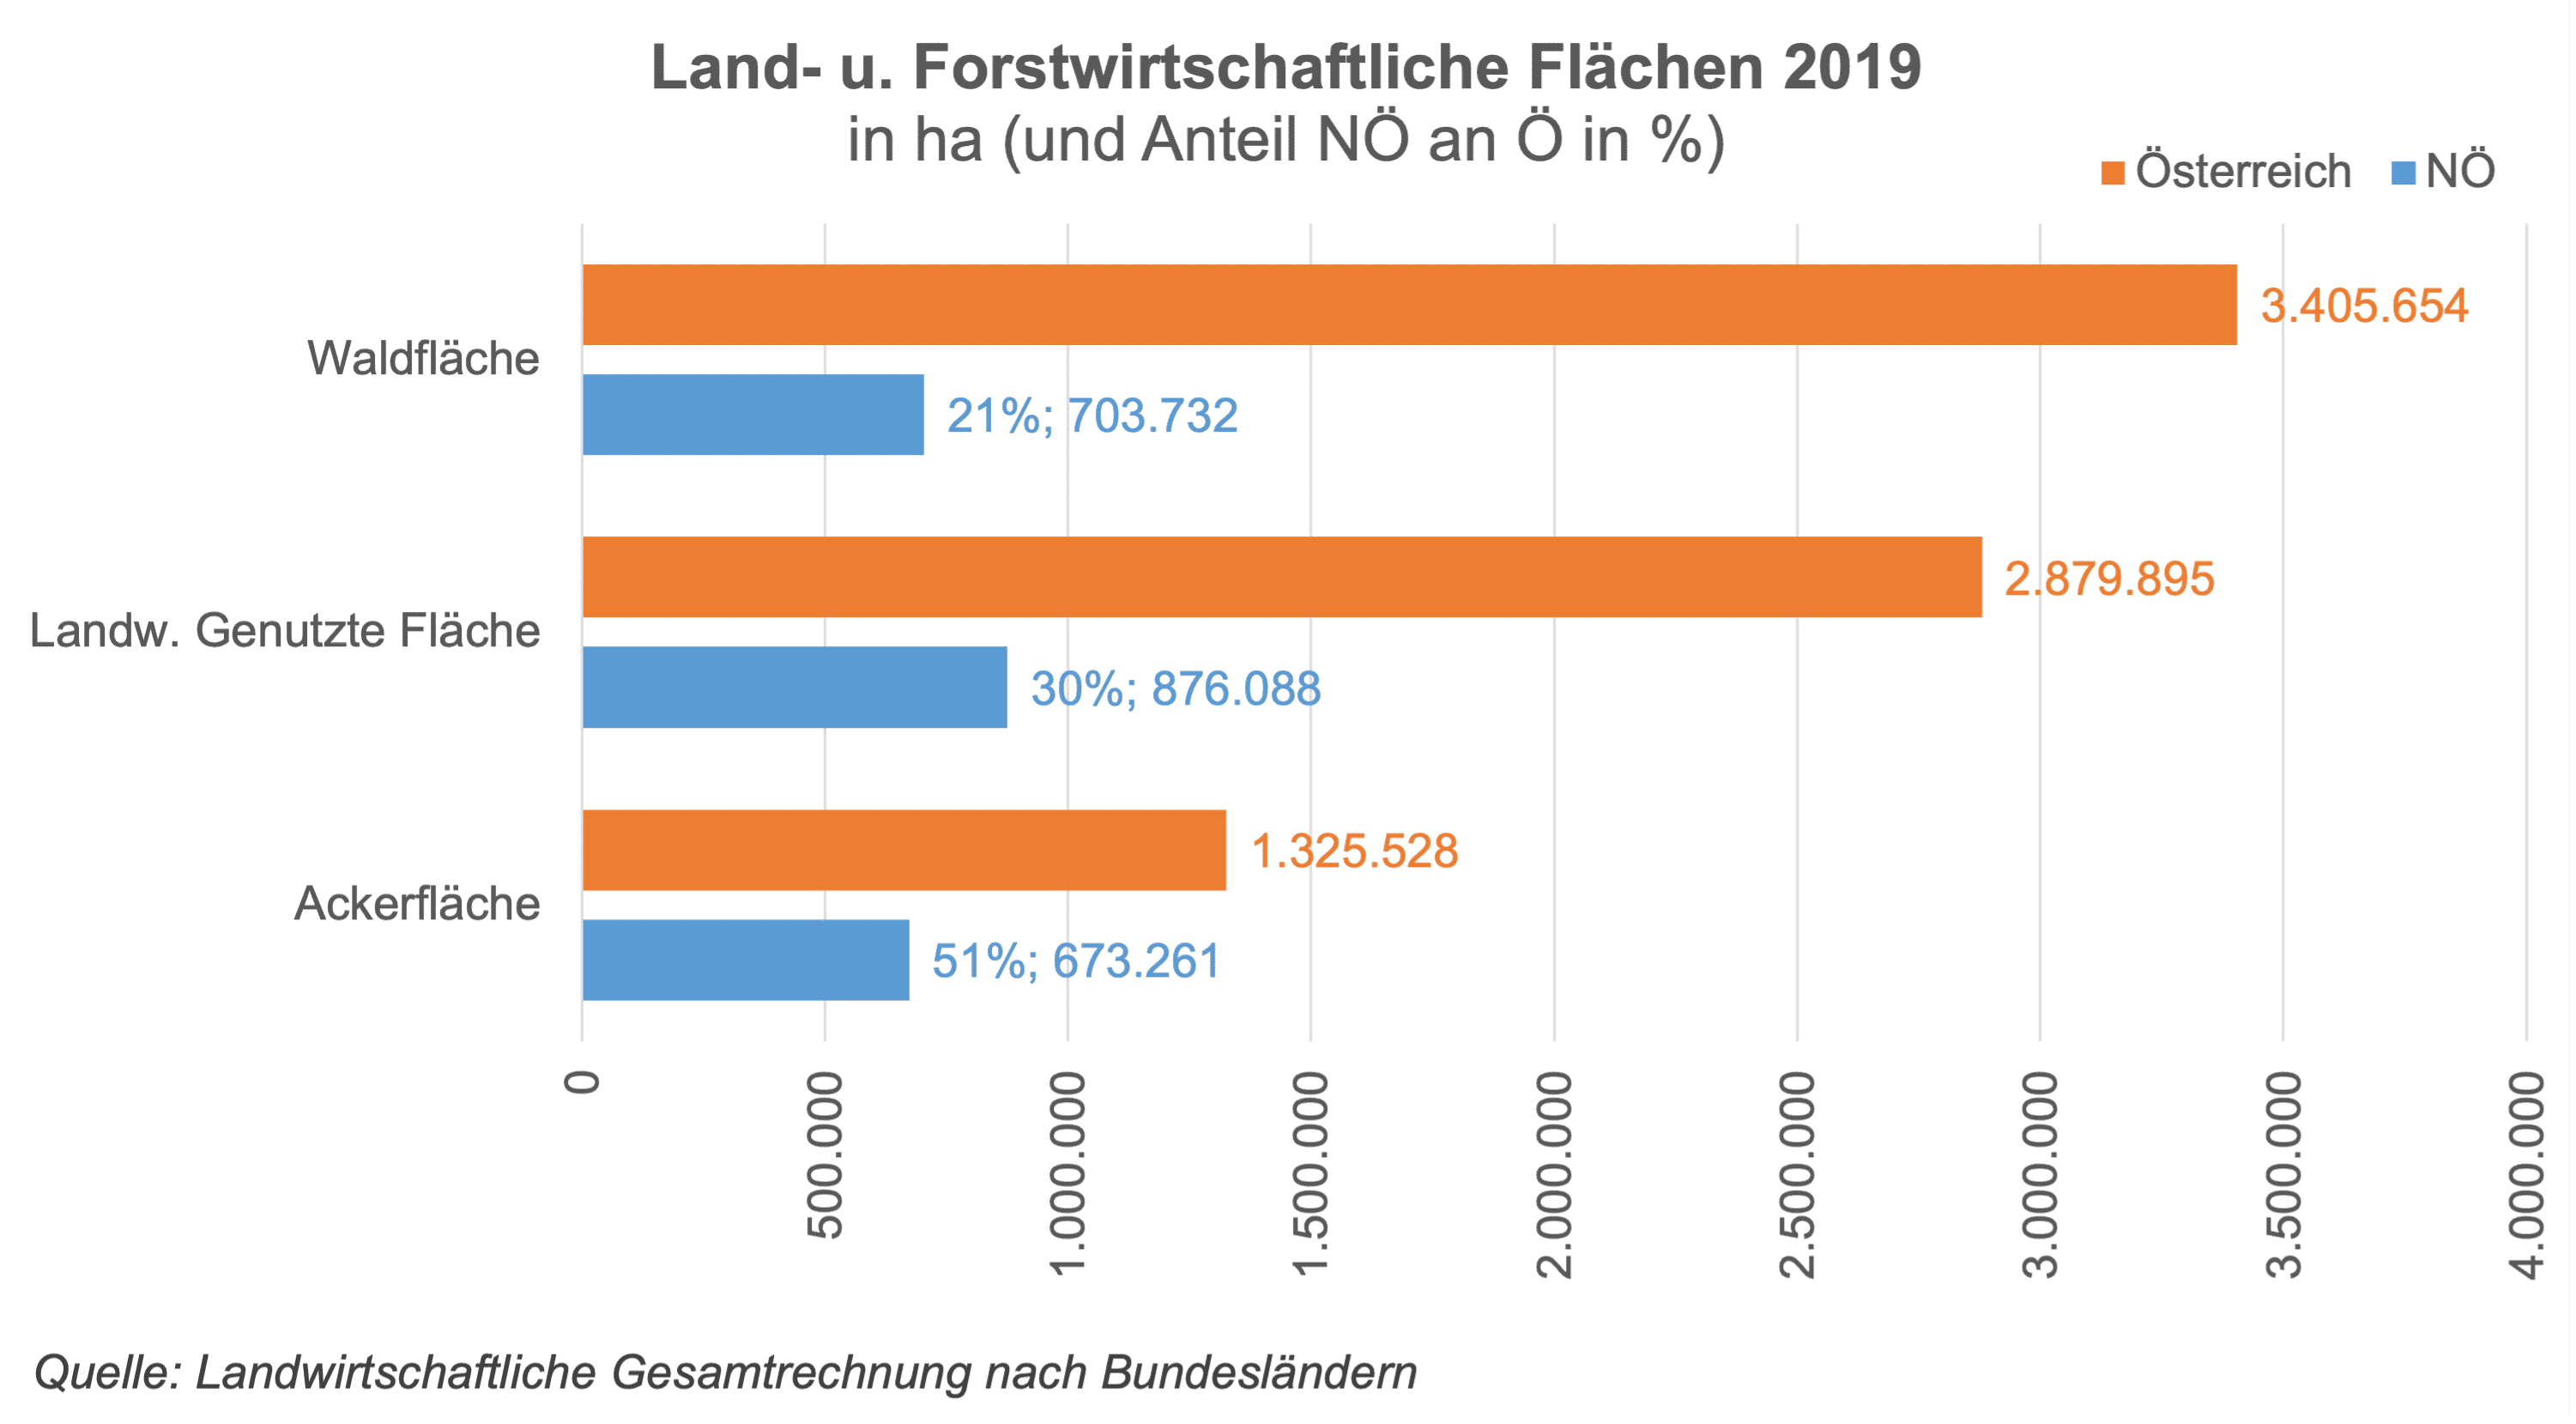 Die Stabgrafik zeigt die Absolutzahlen und Relativzahlen der land- und forstwirtschaftlichen Flächen 2019 in Ö und NÖ. Österreichweit sind die Waldflächen mit über 3,4 Mio. ha die größte Fläche, gefolgt von den landwirtschaftlich genutzten Flächen von 2,8 Mio. ha und den Ackerflächen mit 1,3 Mio. ha. Davon hat NÖ eine Anteil von 21% am Wald, 30% an der landwirtschaftlichen Fläche und bemerkenswerte 51% an der Ackerfläche. NÖ ist das flächenmäßig größte Bundesland und nimmt damit eine wesentliche Stellung bei der Versorgung der österreichischen Bevölkerung mit land- und forstwirtschaftlichen Produkten ein. Das Landwirtschaftsjahr 2019 war durch deutlich gestiegene Erlöse in der Schweineproduktion geprägt. Demgegenüber lagen die Produktionswerte von Wein, insbesondere aber von Obst deutlich unter den sehr guten Vorjahresergebnissen. Ebenfalls niedriger als 2018 fiel der Wert der Rinderproduktion aus. Die gegenläufigen Entwicklungen in den verschiedenen Produktionssparten hatten auf Bundesebene in Summe einen leichten Anstieg des landwirtschaftlichen Gesamtproduktionswerts (+1,6%) zur Folge. Auf Ebene der Bundesländer stellt sich die Entwicklung jedoch differenzierter dar. In Niederösterreich betrug der Produktionswert des landwirtschaftlichen Wirtschaftsbereichs 2019 rd. 2,4 Mrd. Euro, was knapp einem Drittel des Bundesergebnisses von rd. 7,5 Mrd. Euro entsprach.